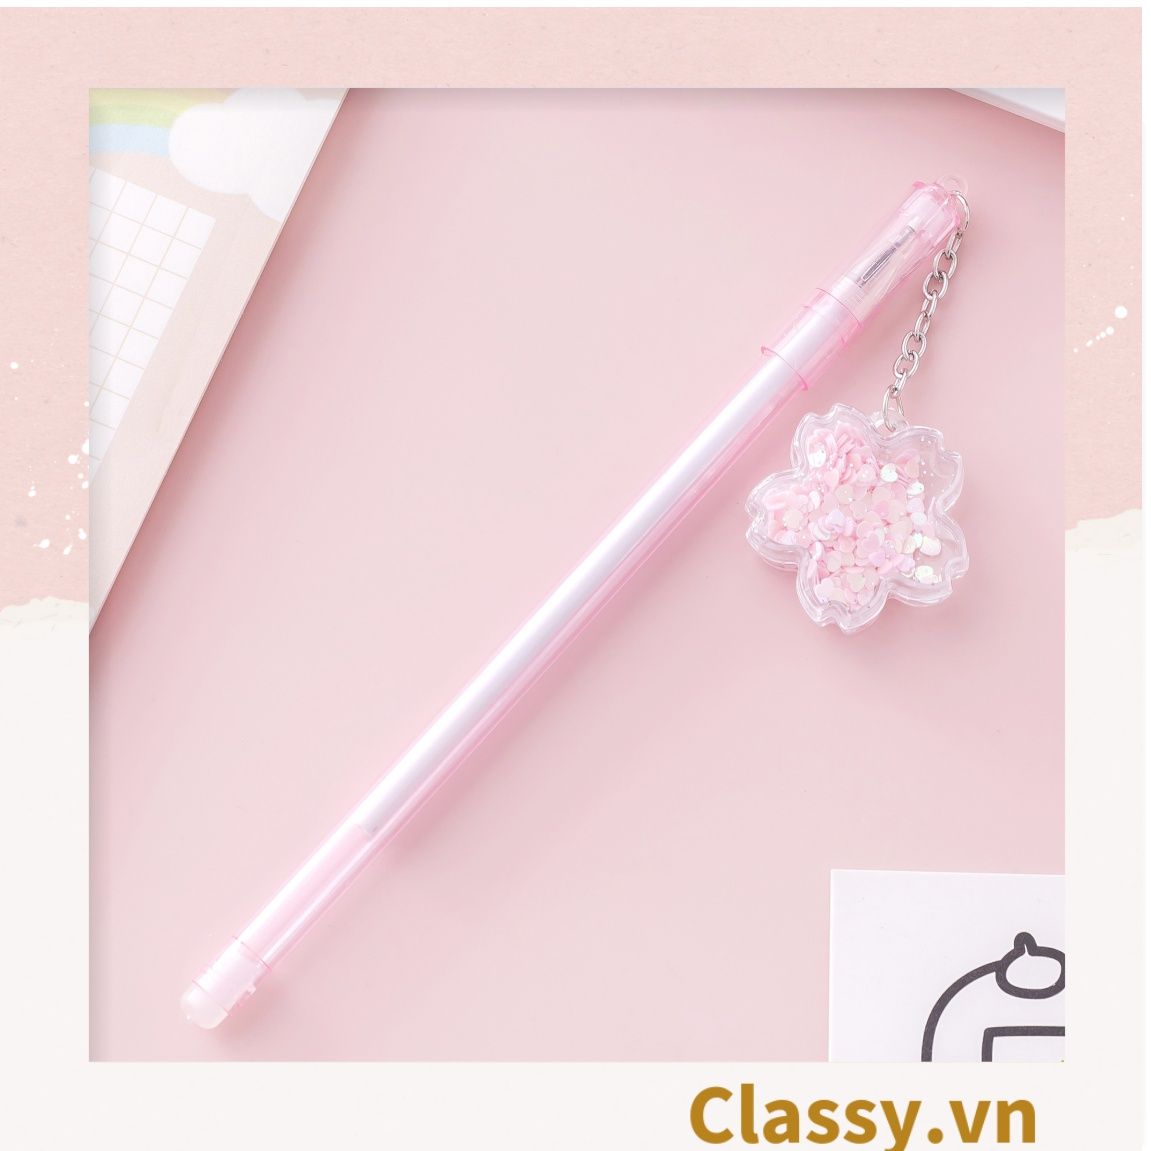  Bút gel 0.5mm màu hồng, đính kèm bông hoa, tùy chọn cho sinh viên/nhân viên văn phòng PK1200 